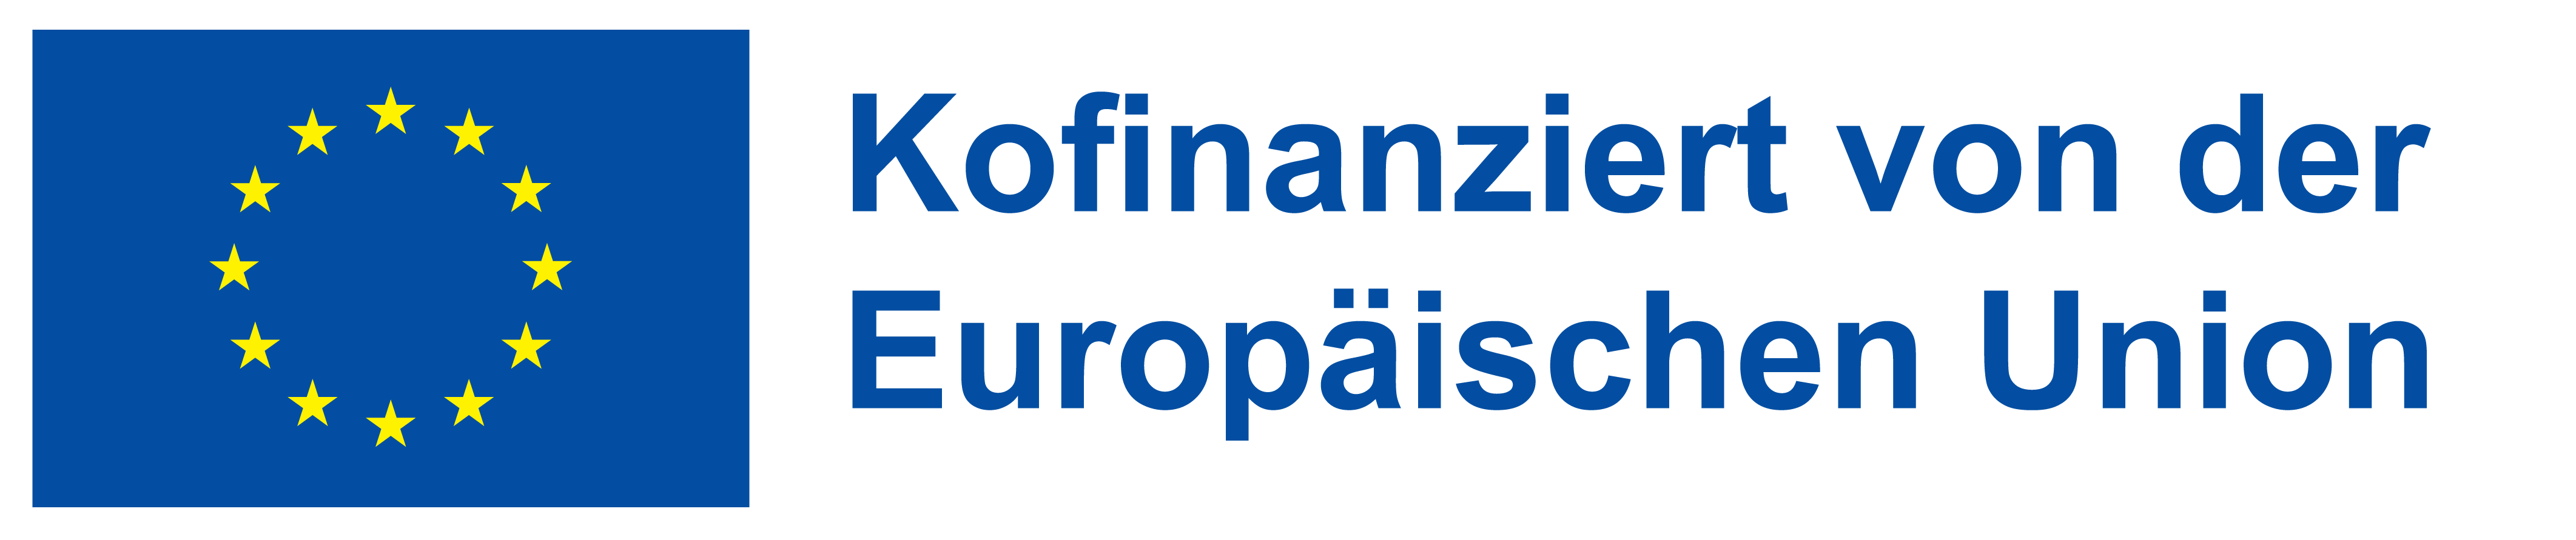 Erasmus Plus-Logo